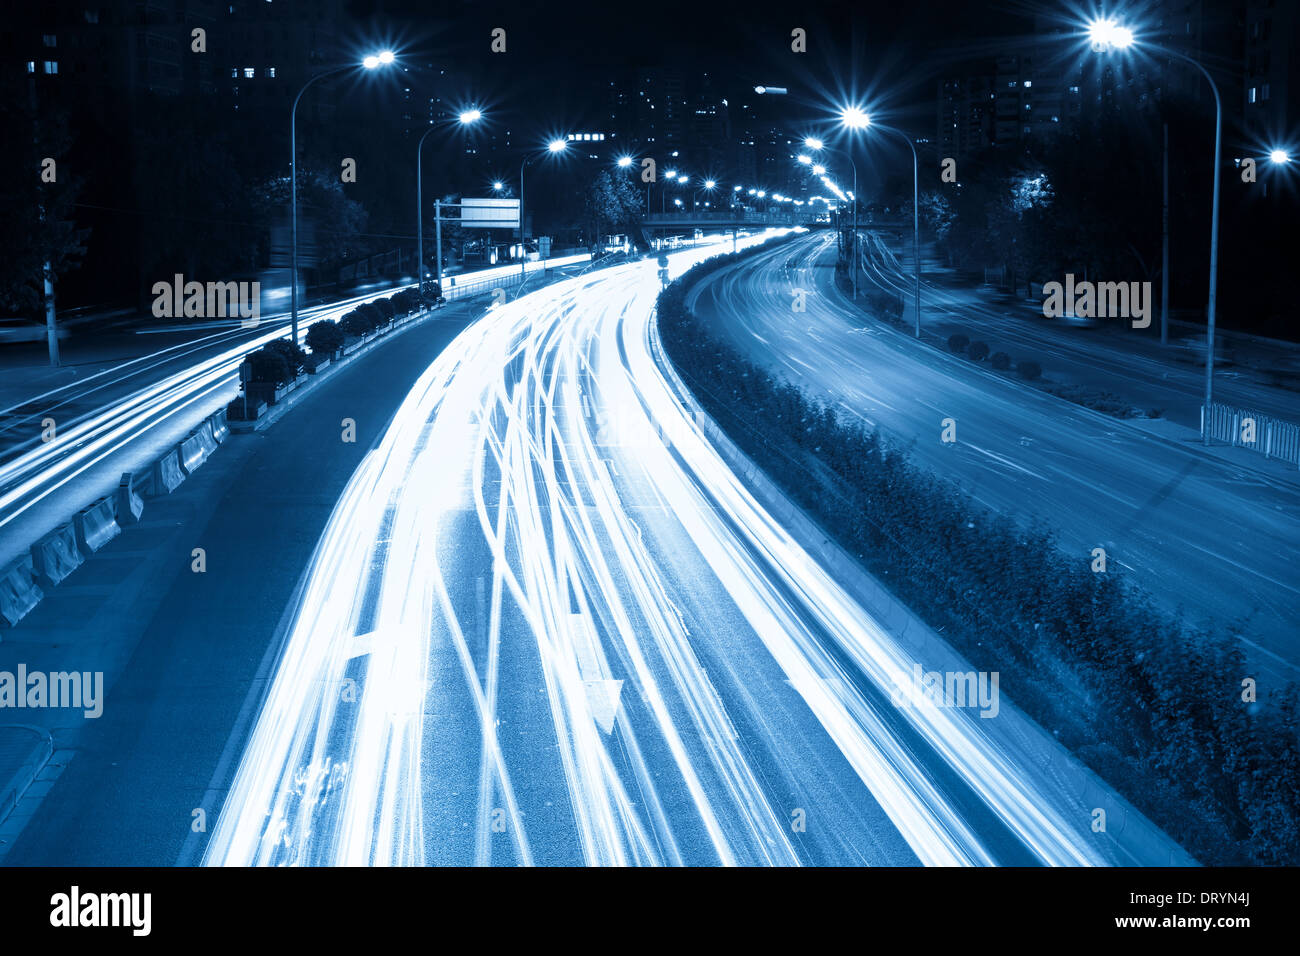 La hora pico de tráfico durante la noche Foto de stock